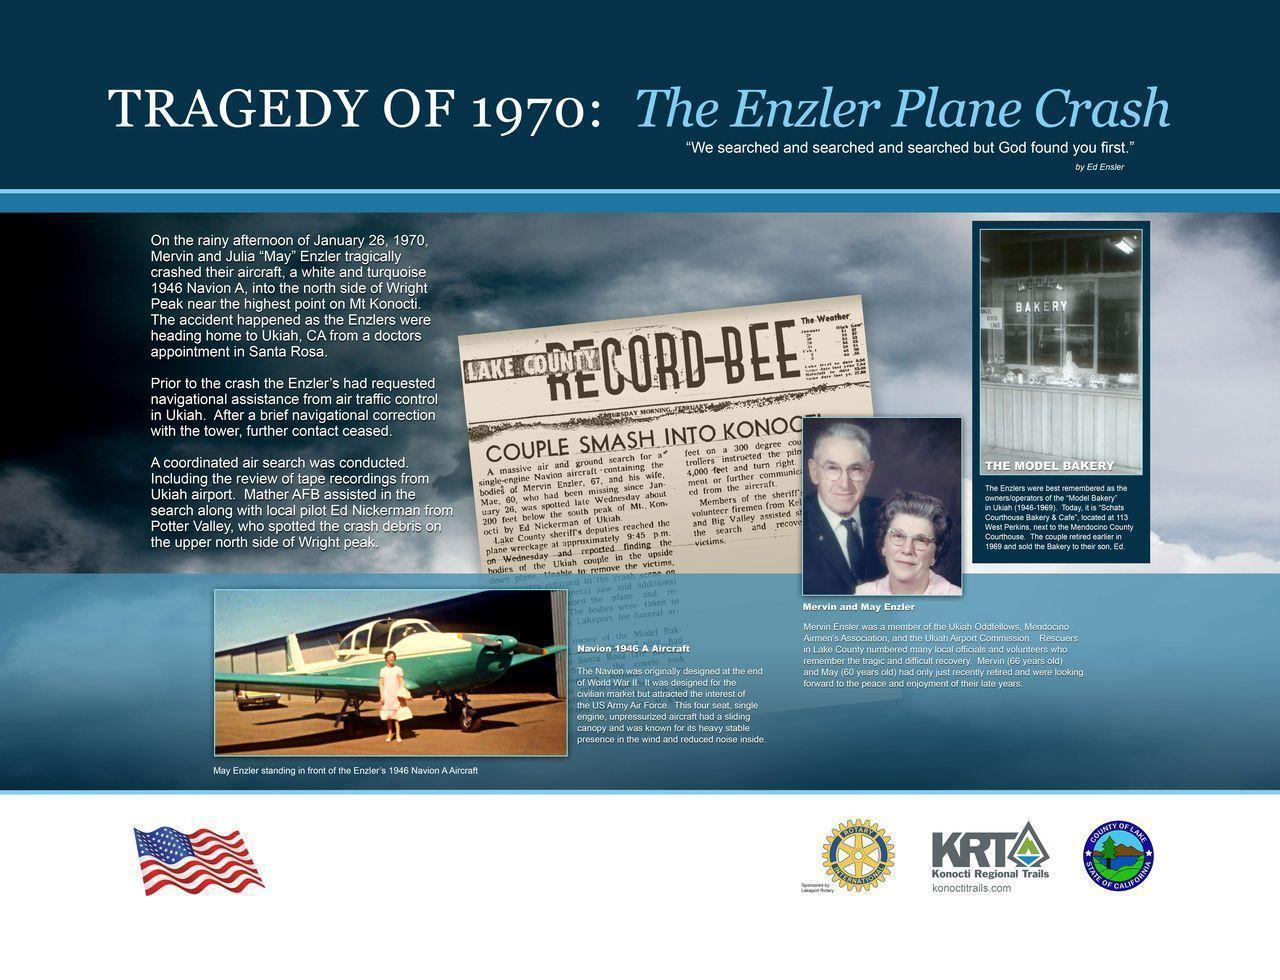 Enzler plane crash site plaque as it was